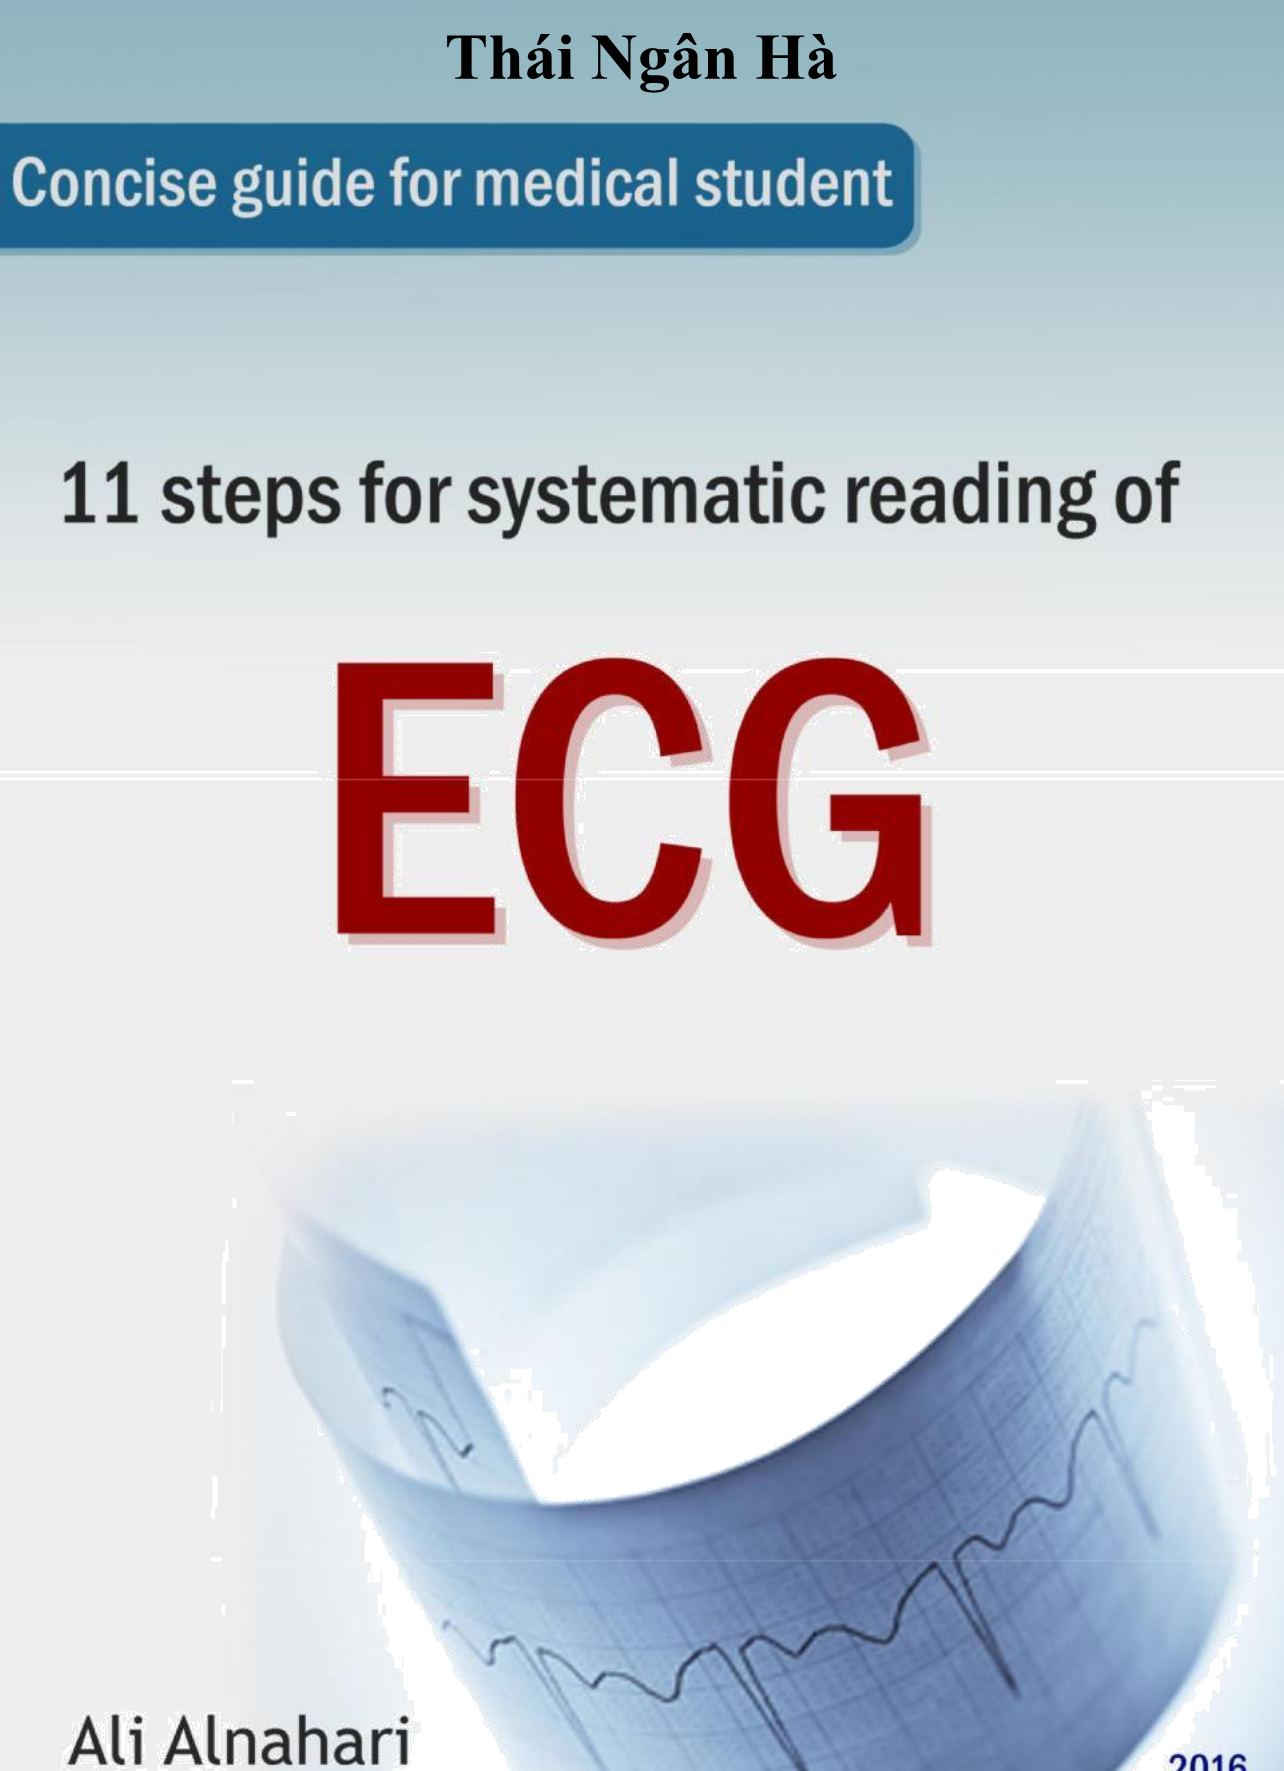 [Tài Liệu Dịch] 11 Bước Đọc ECG Một Cách Có Hệ Thống - Thái Ngân Hà